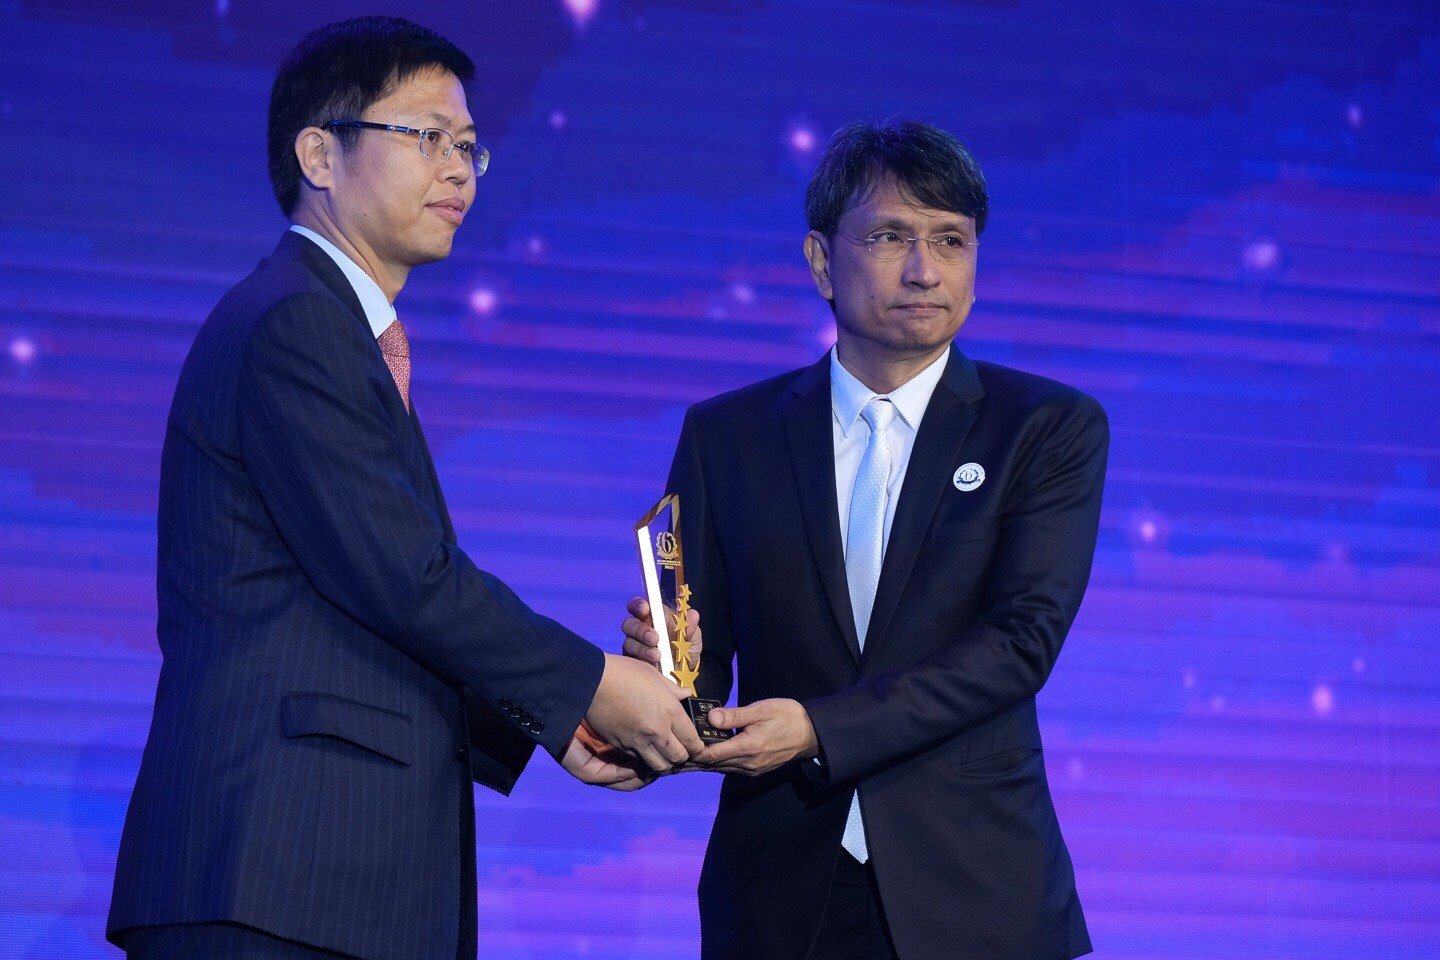 รางวัล “Thailand Headlines Person Of The Year Awards 2018” สาขาข่าวสารการเมือง